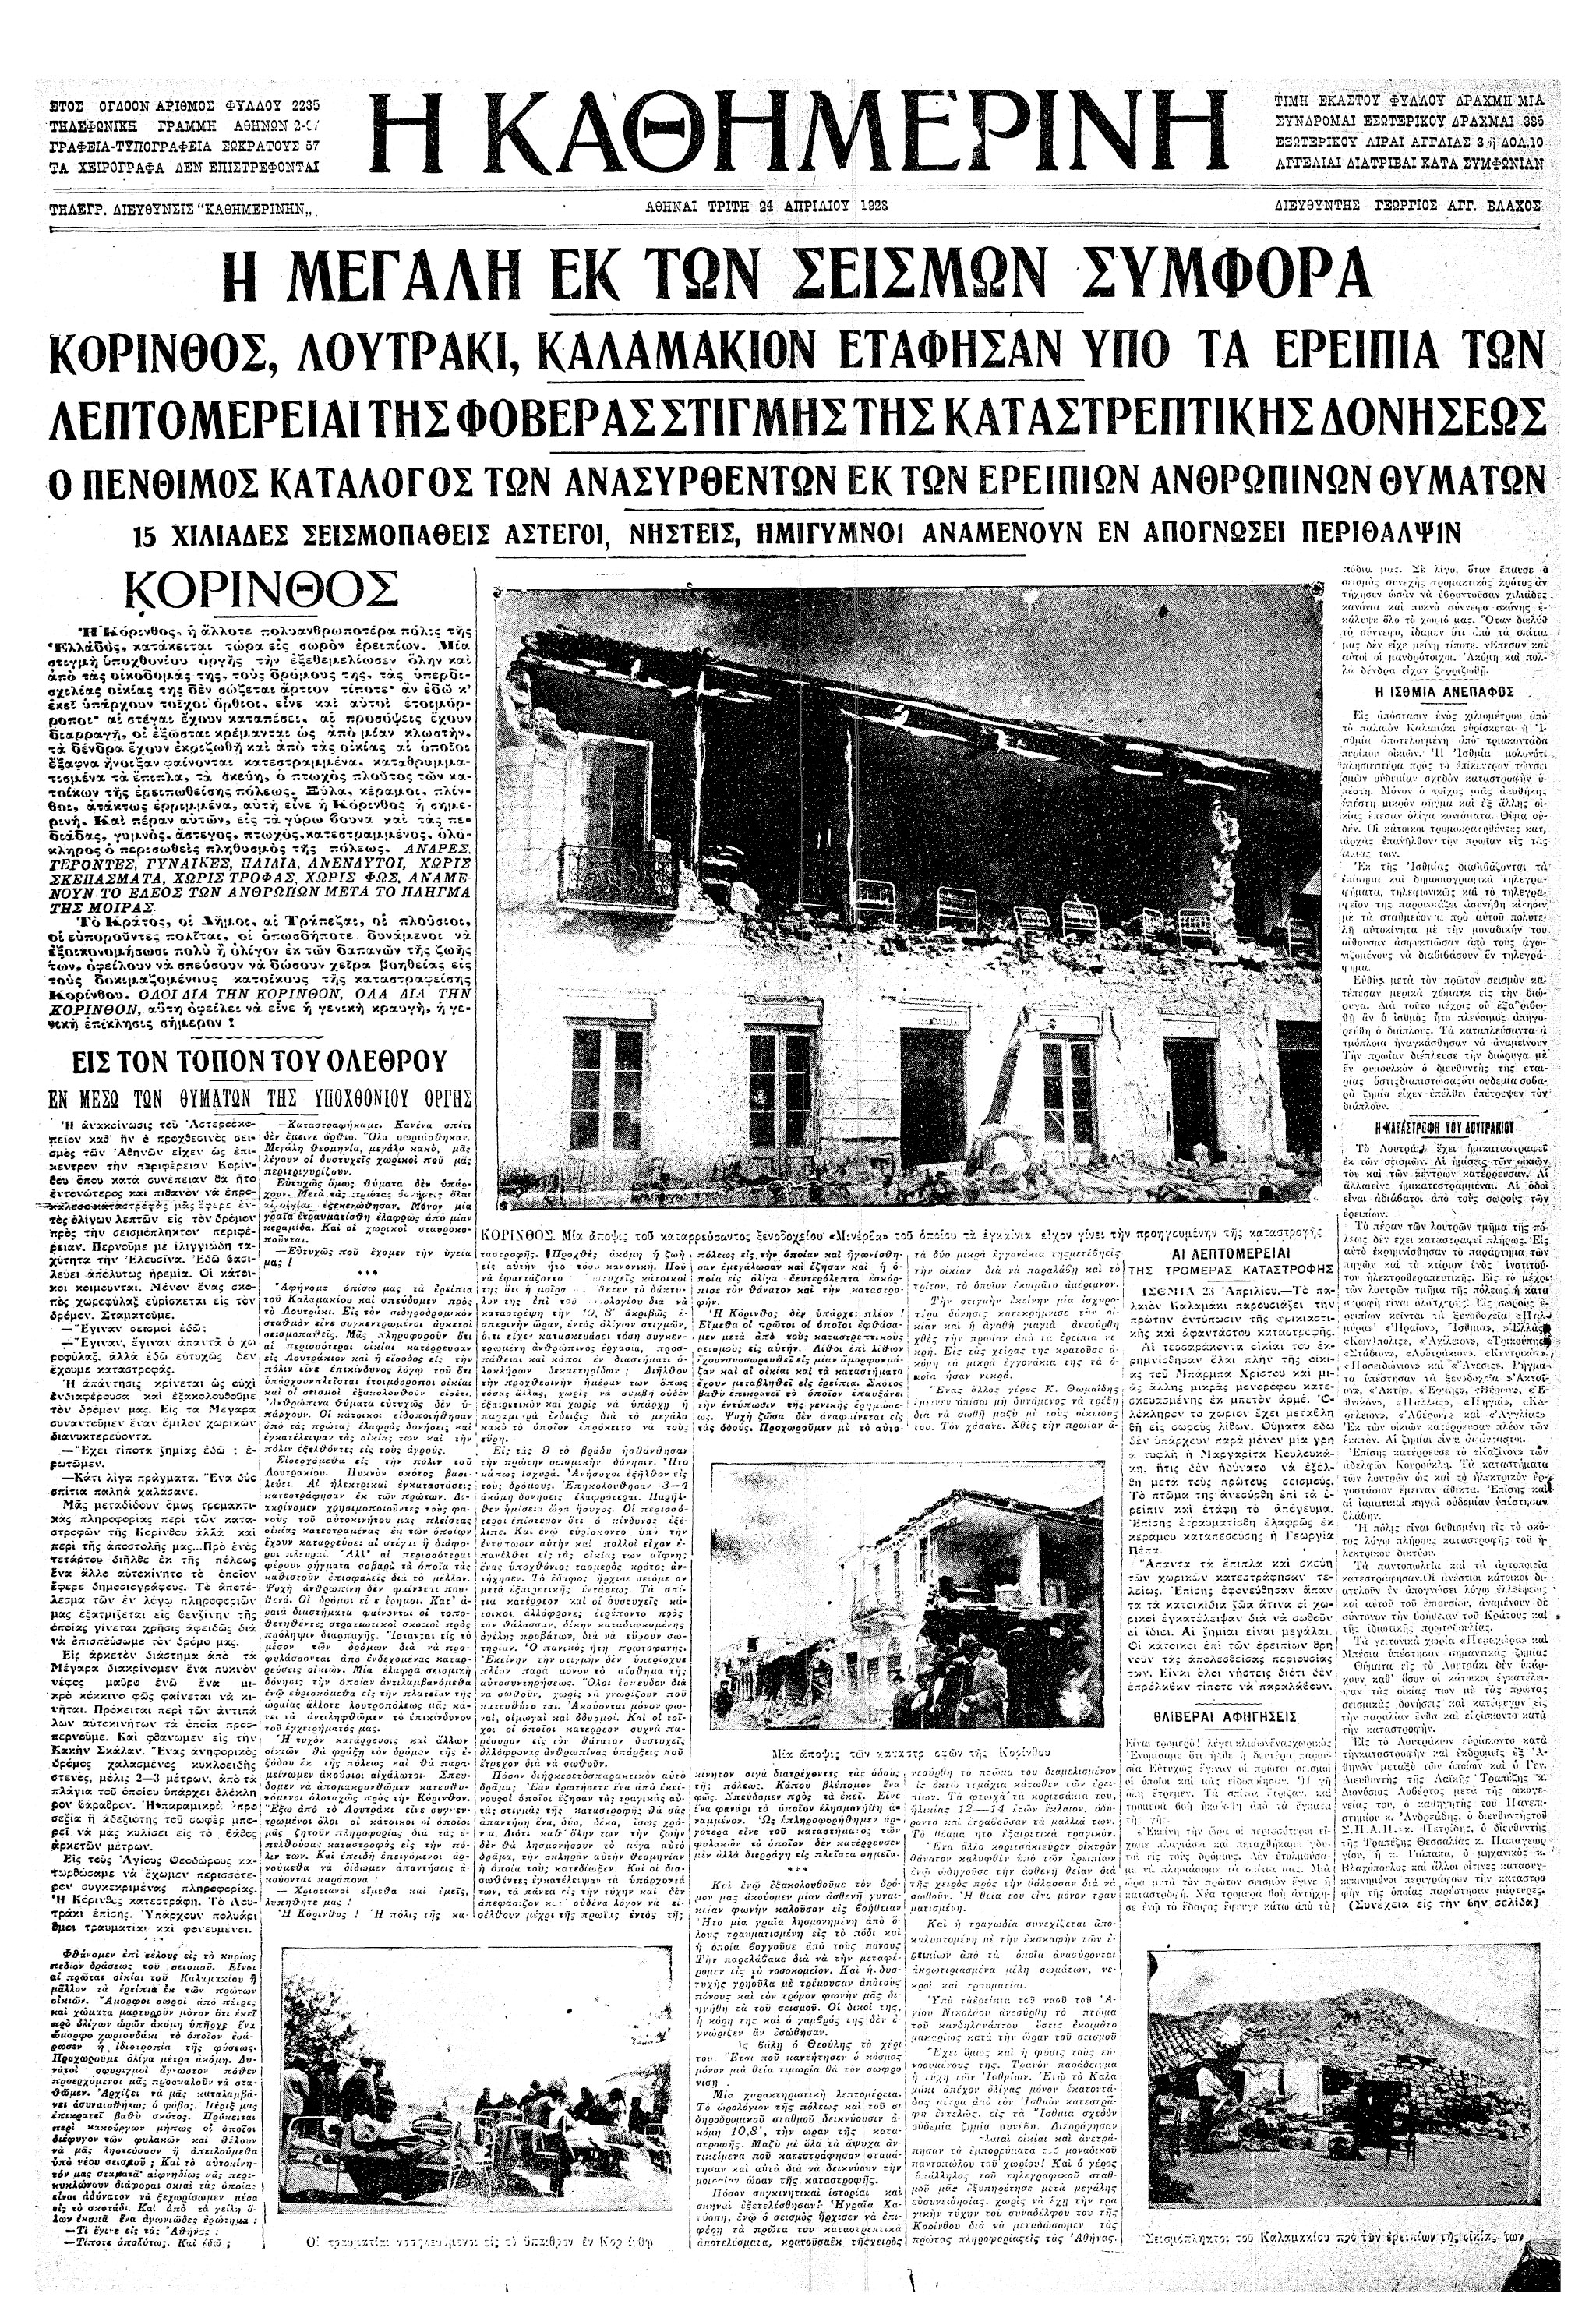 Σαν σήμερα: 22 Απριλίου 1928 – Ο μεγάλος σεισμός της Κορίνθου-3